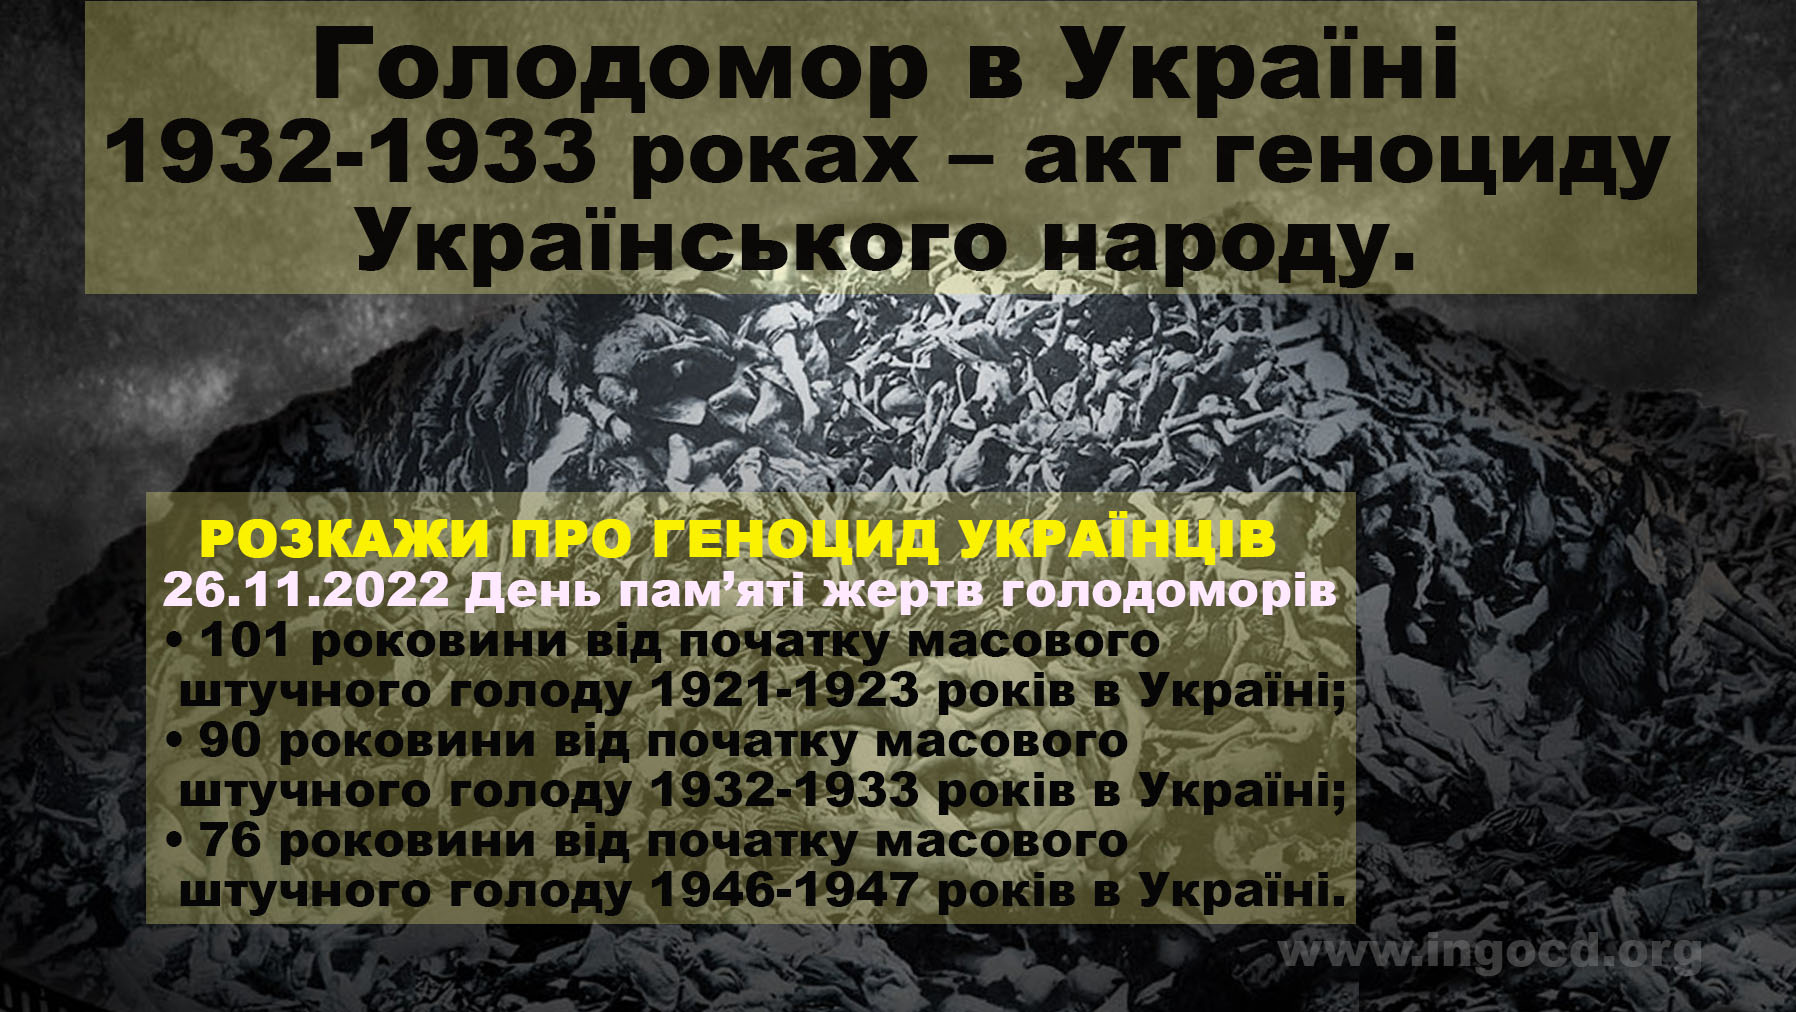 Genocide in Ukraine